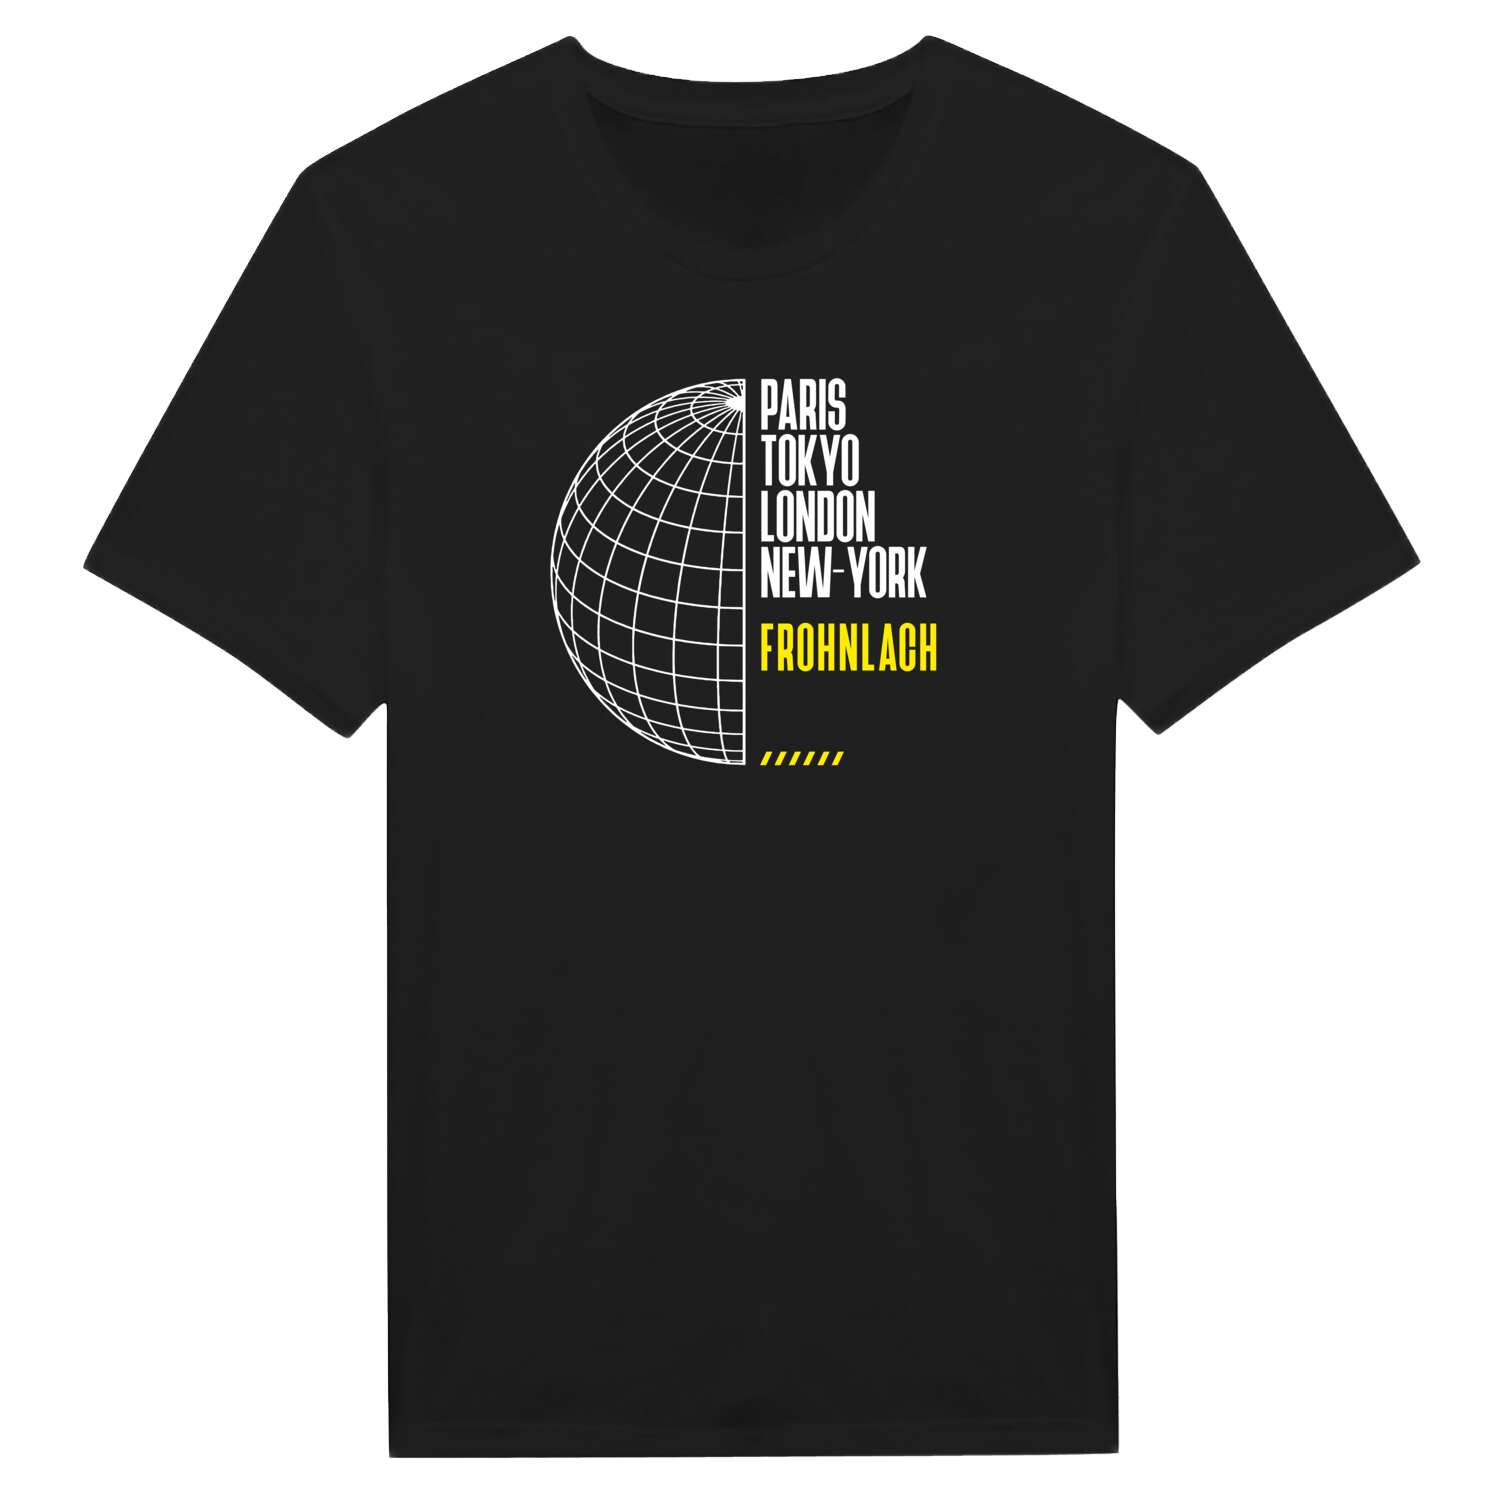 Frohnlach T-Shirt »Paris Tokyo London«